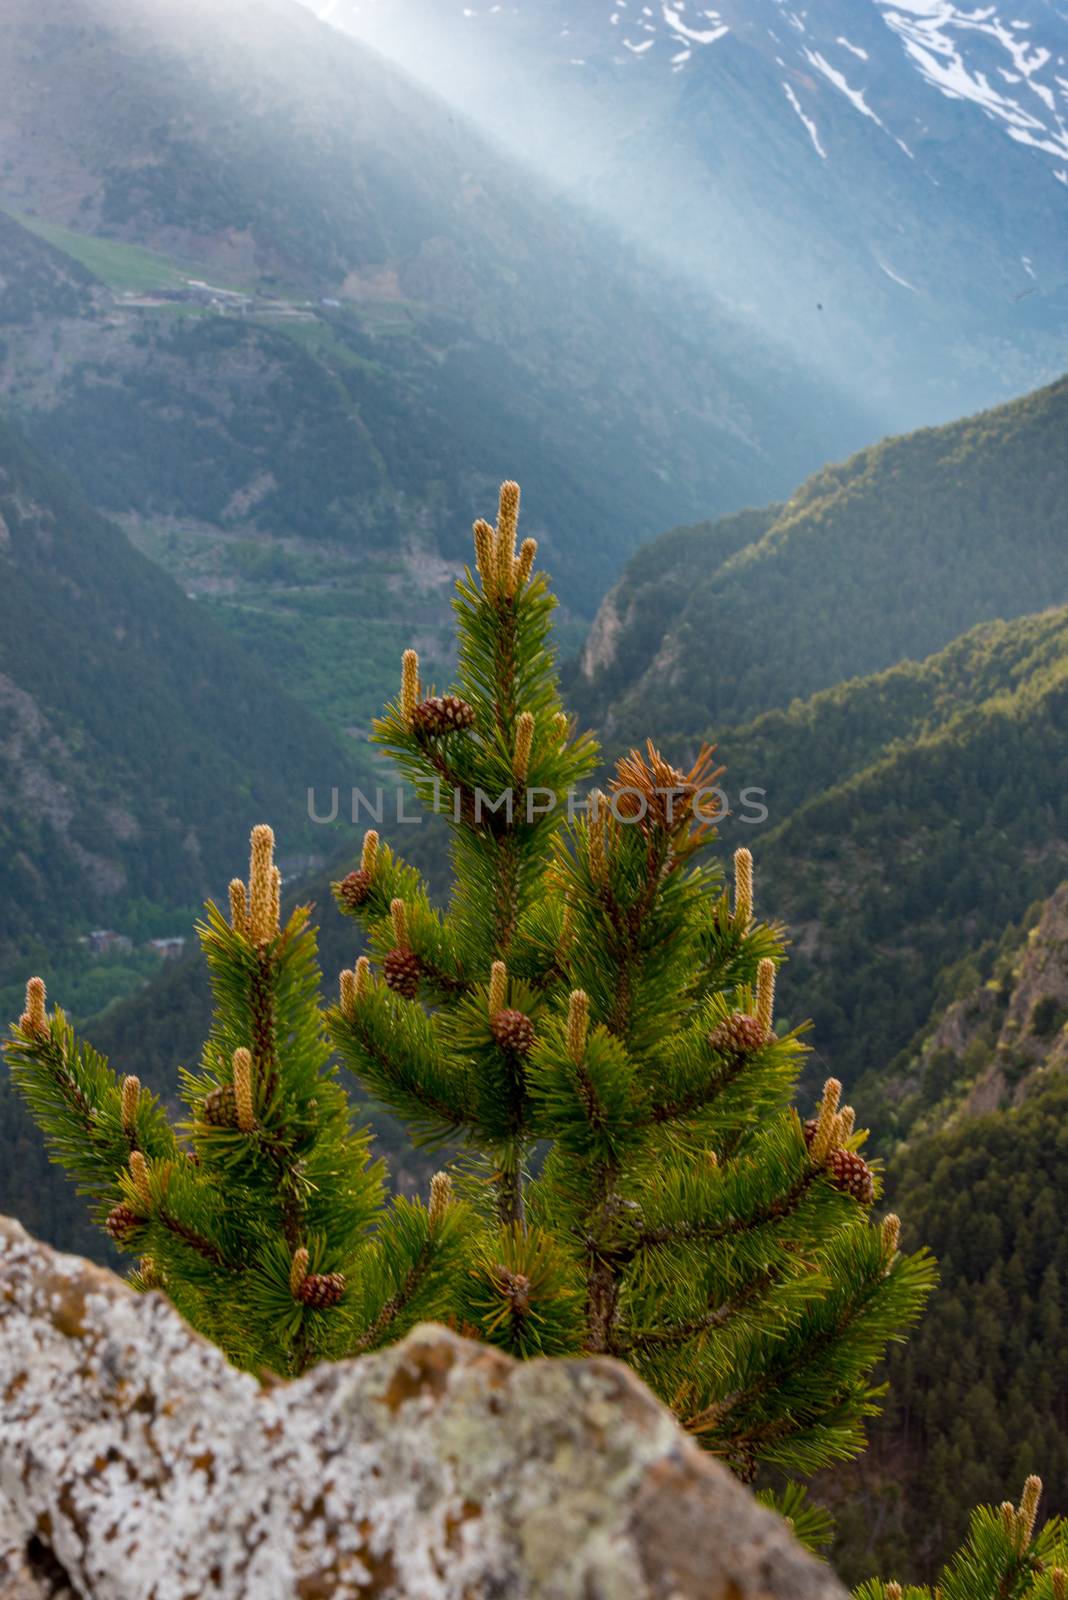 Landscape of Parc Natural Comunal de les Valls del Comapedrosa national park in Andorra.